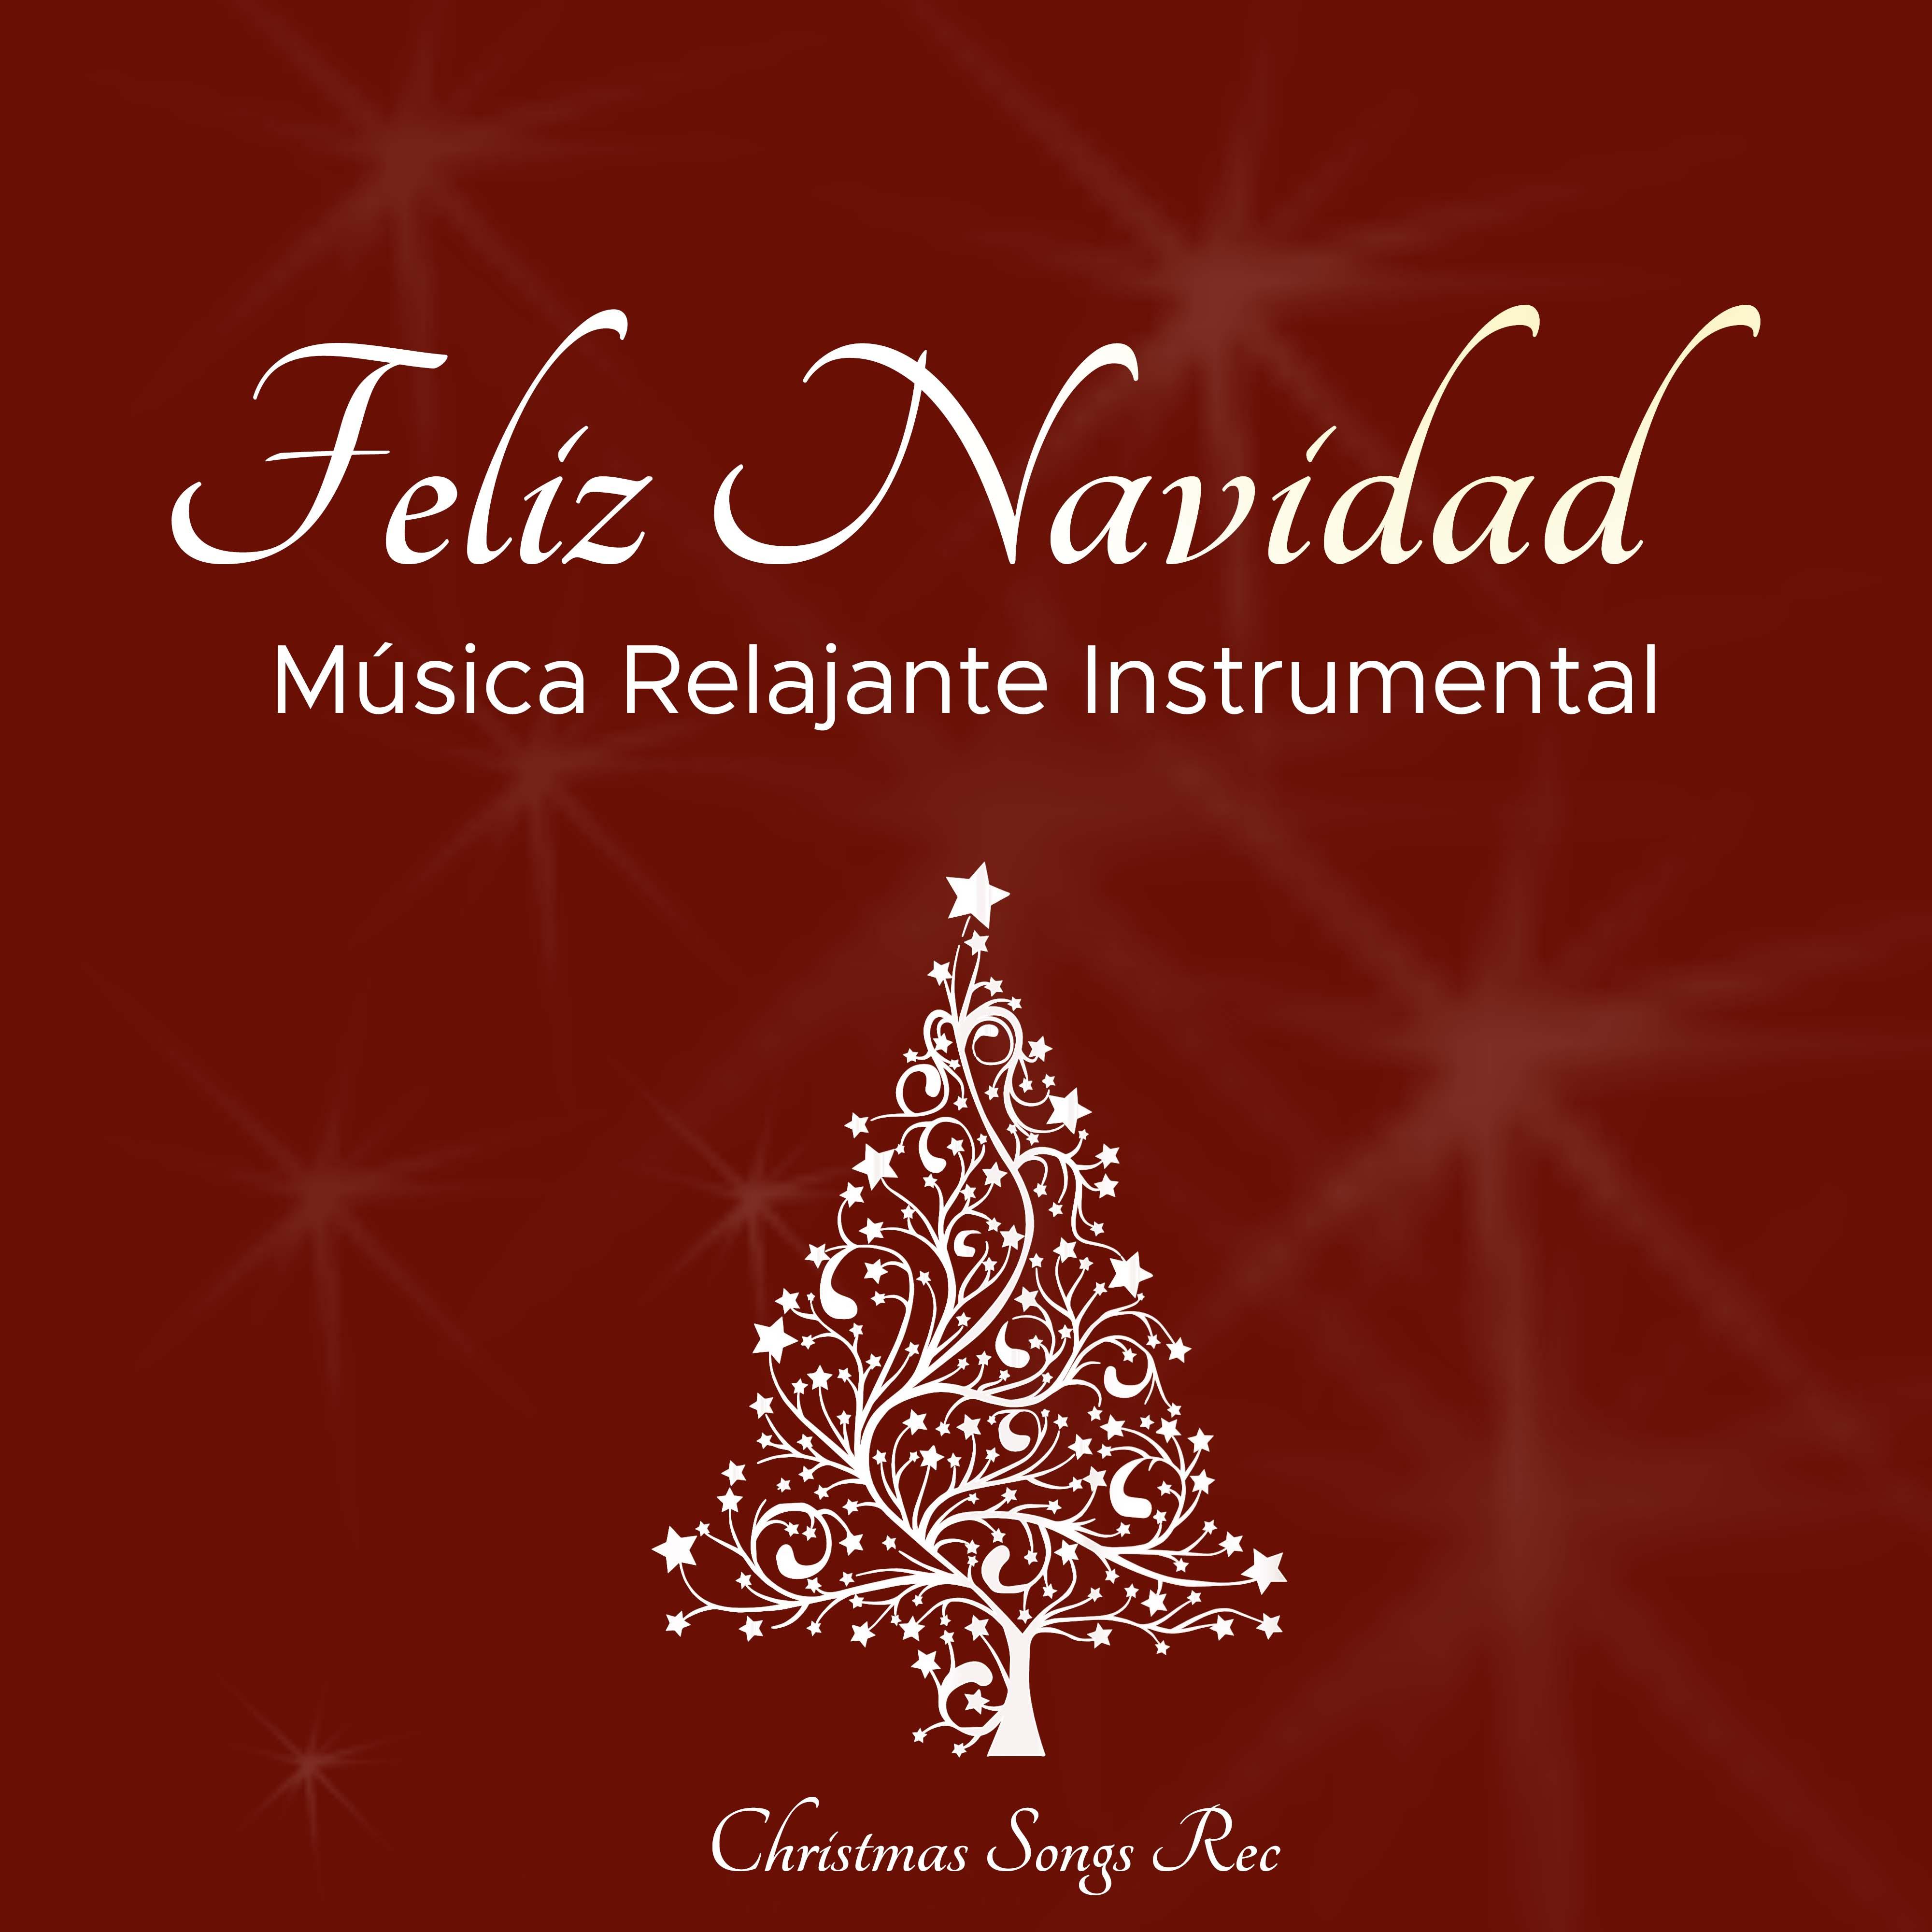 Feliz Navidad - Musica Relajante Instrumental de Navidad Tradicional para llenar tu Corazon de Paz y Serenidad durante tus Vacaciones de Navidad